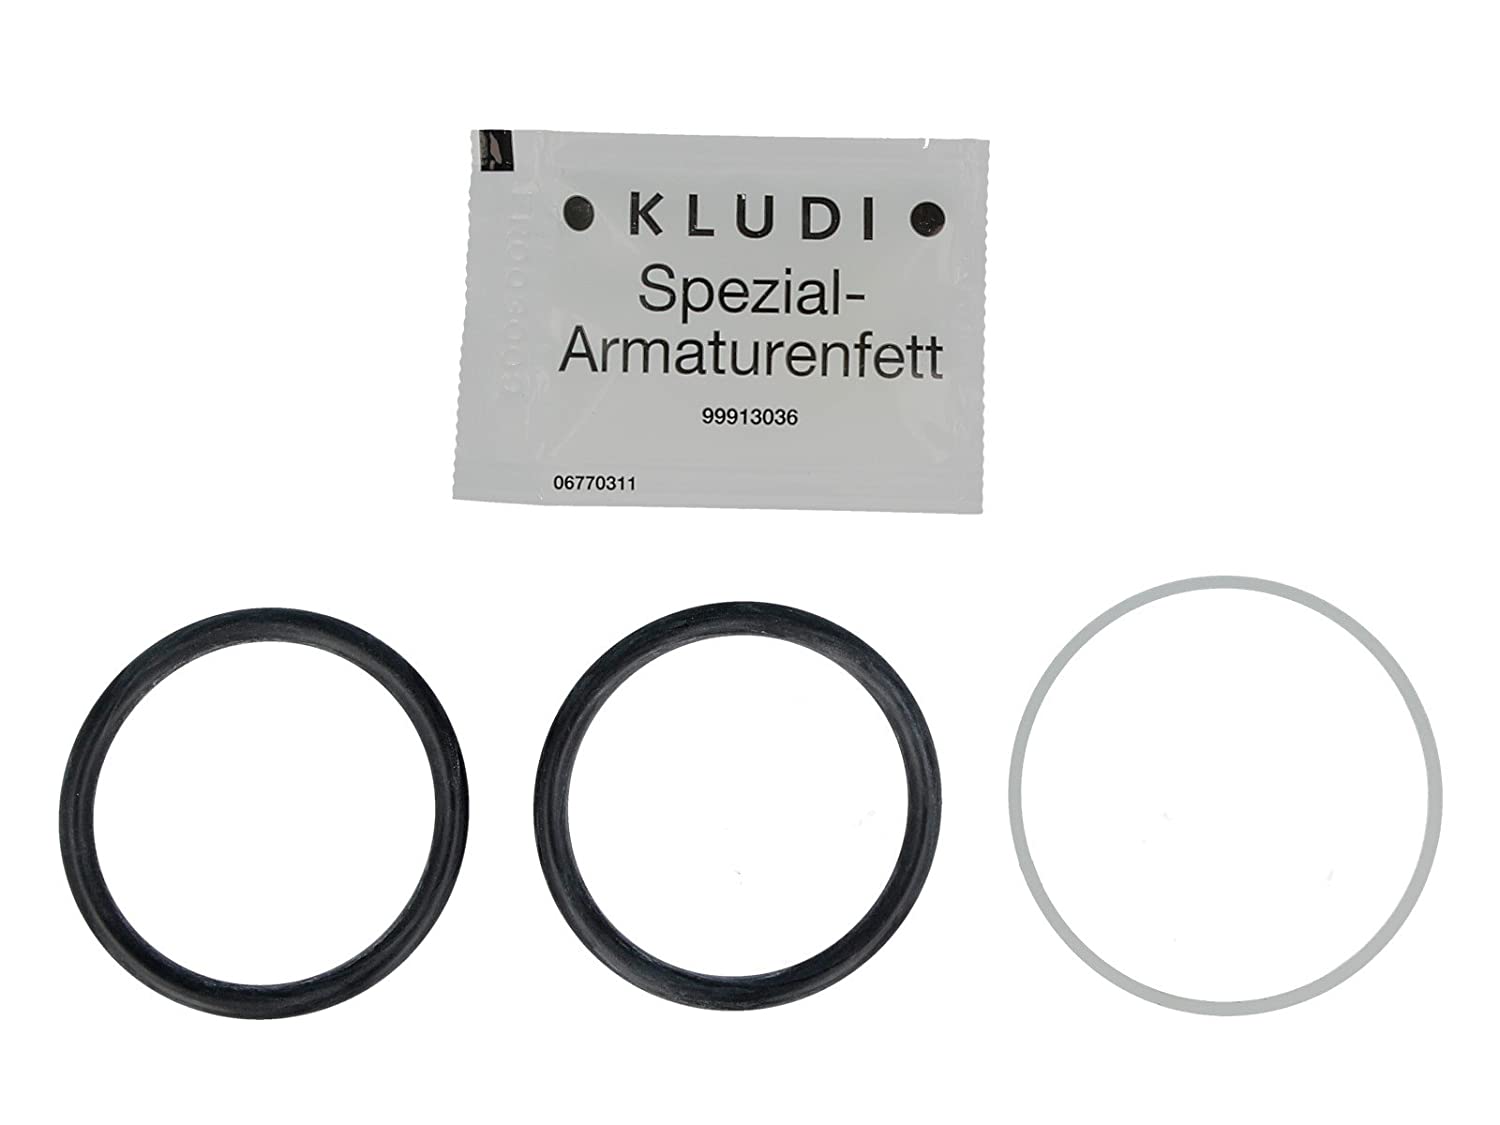 εικόνα του KLUDI Komet / Trendo sealing set for kitchen fittings 7548400-00